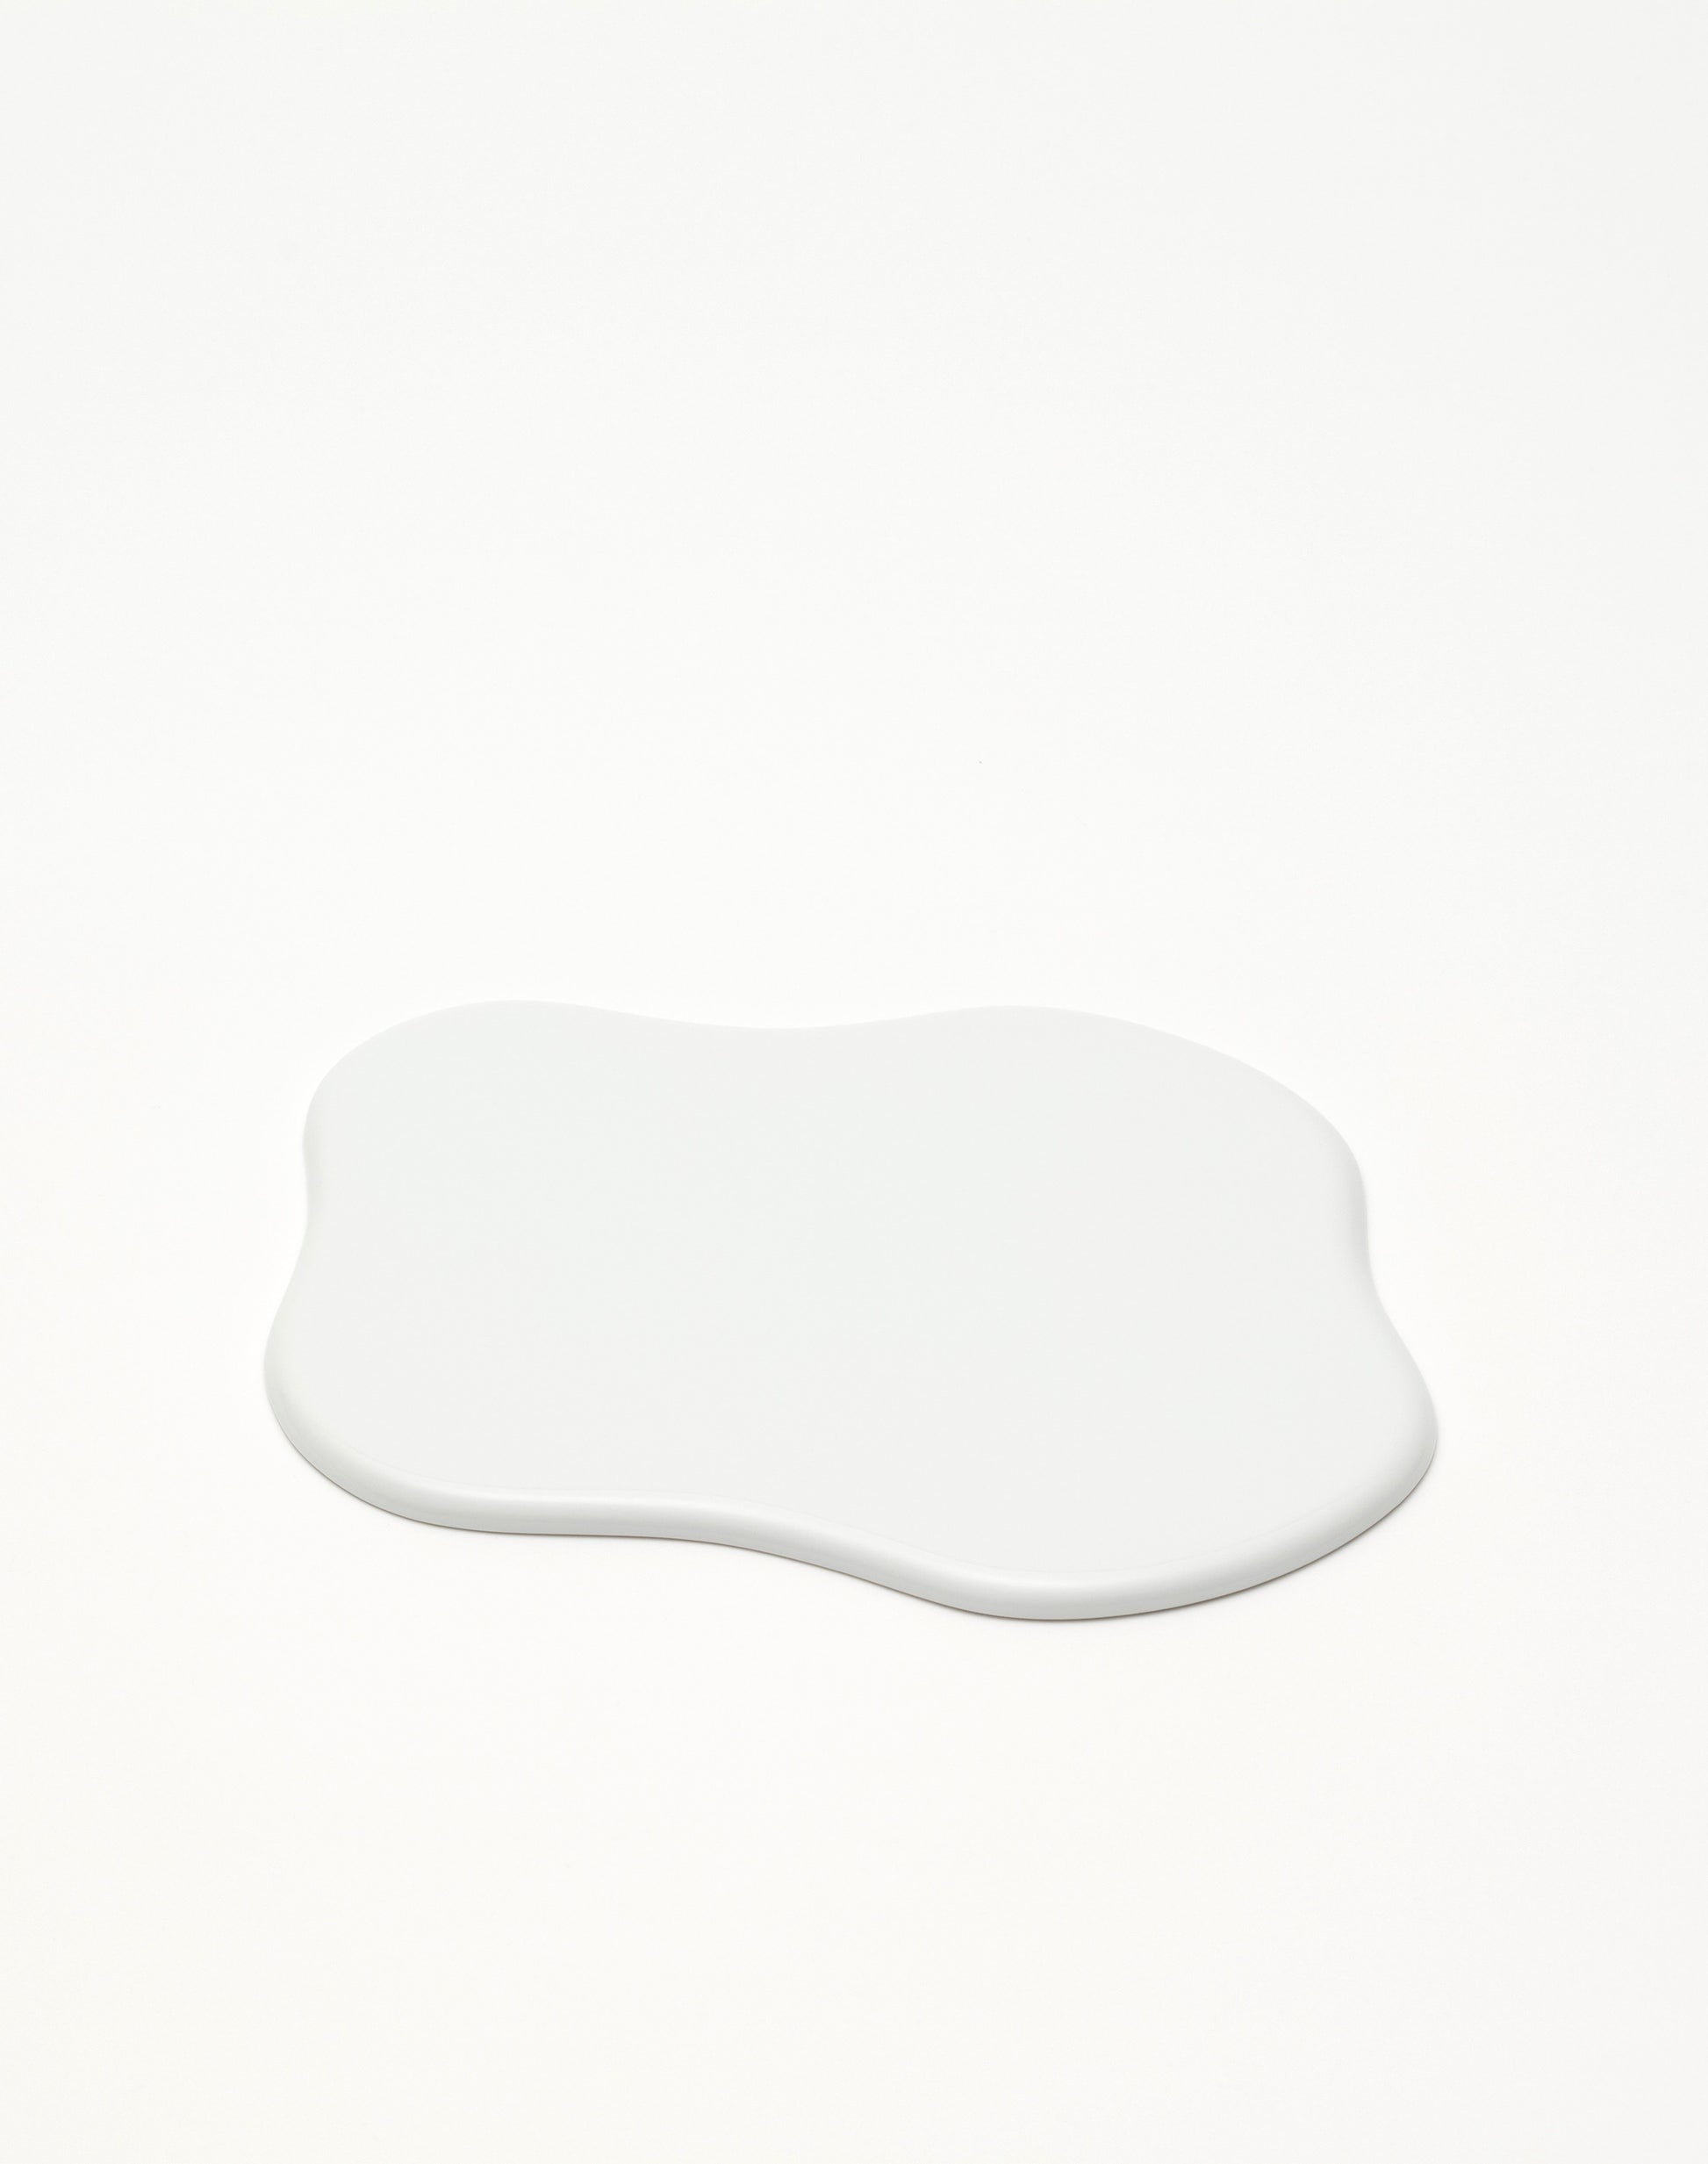 TAF pottery tray white GS028 - MONOLAB